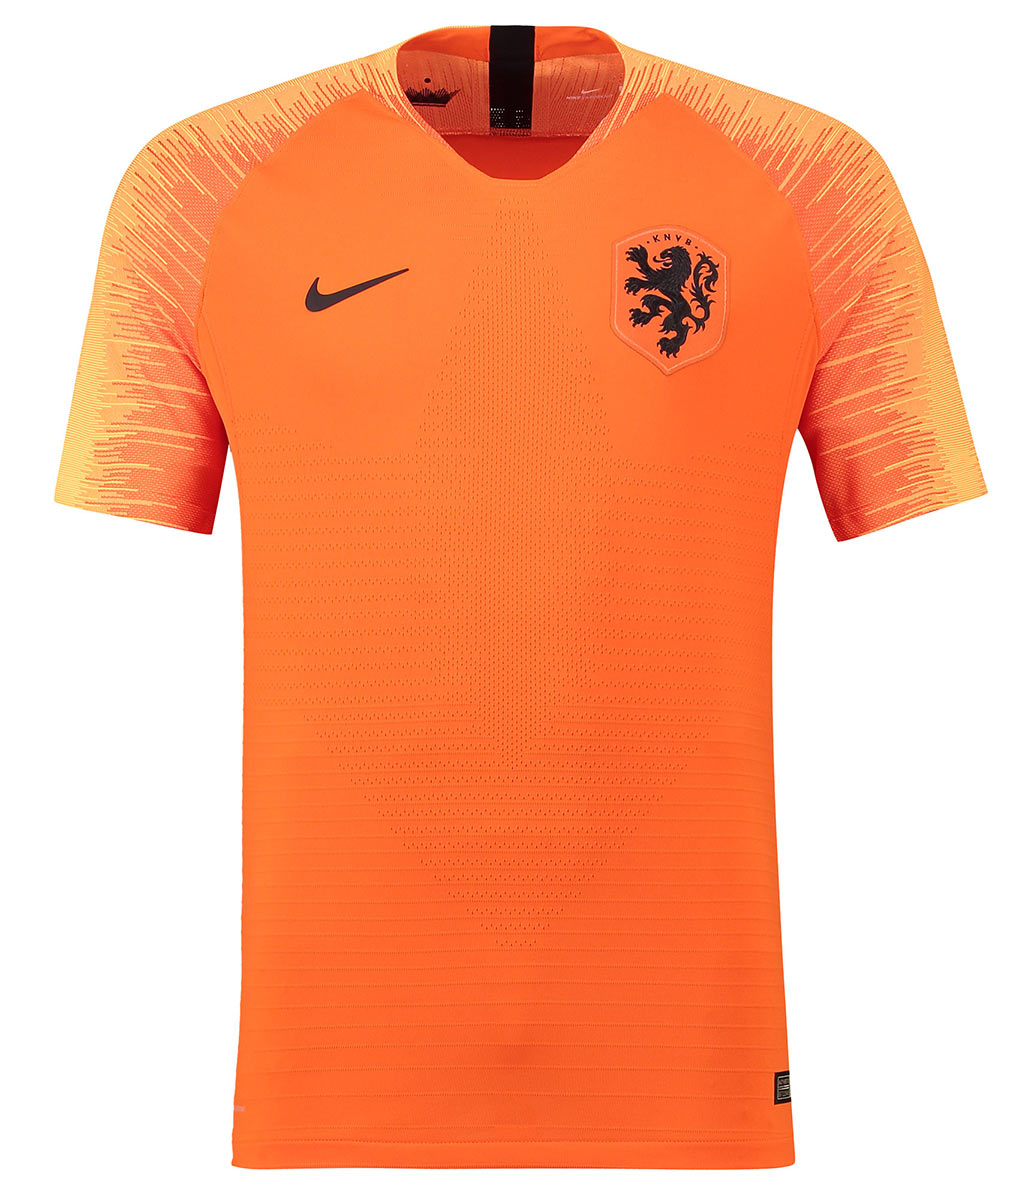 Maglie Olanda 2018-2020 Nike, Frank de Boer sorprende due tifosi